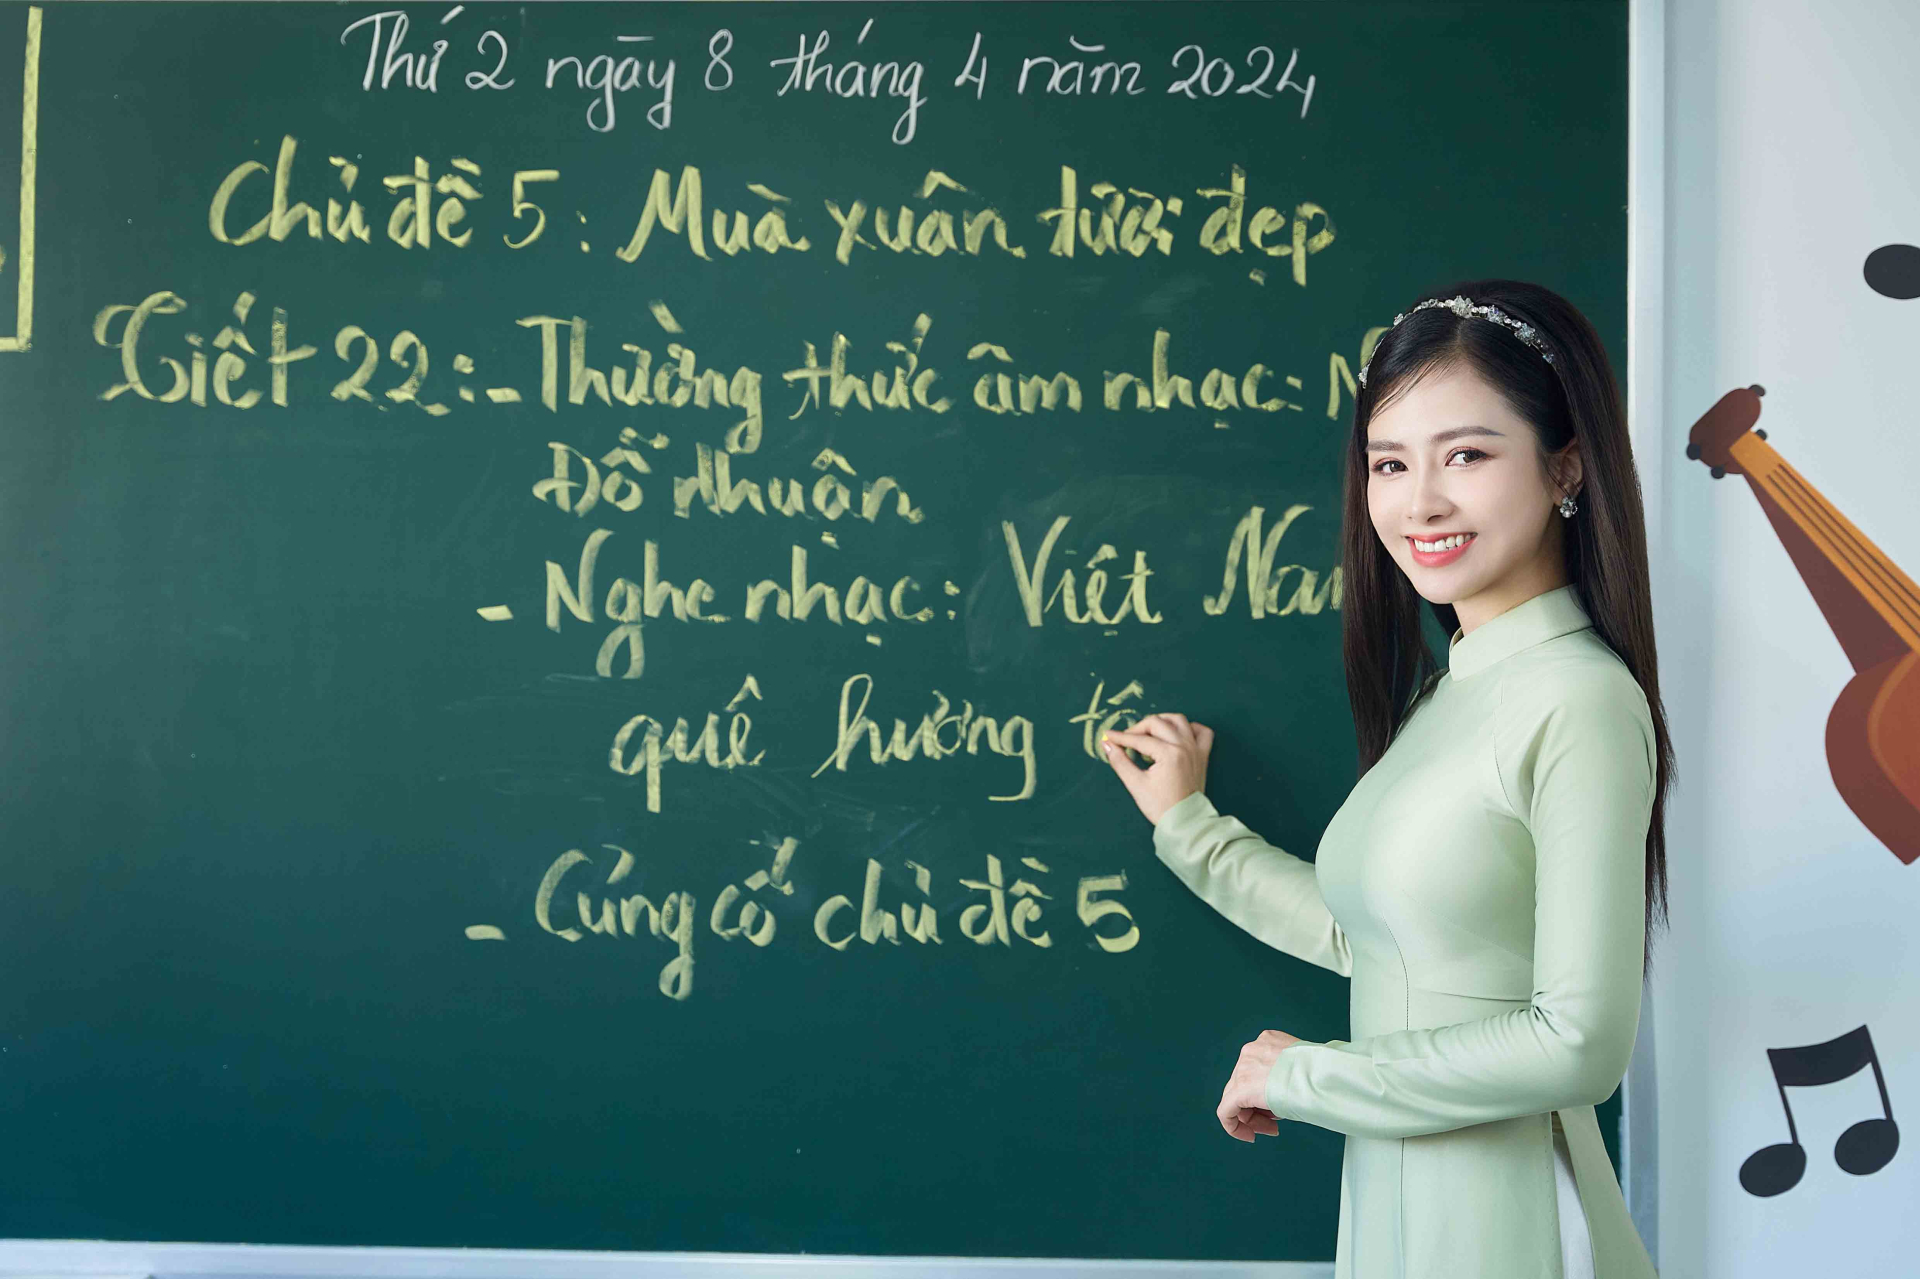 Dương Hoàng Yến - Khắc Việt lan toả tình yêu nước thời hiện đại qua MV mới - ảnh 3